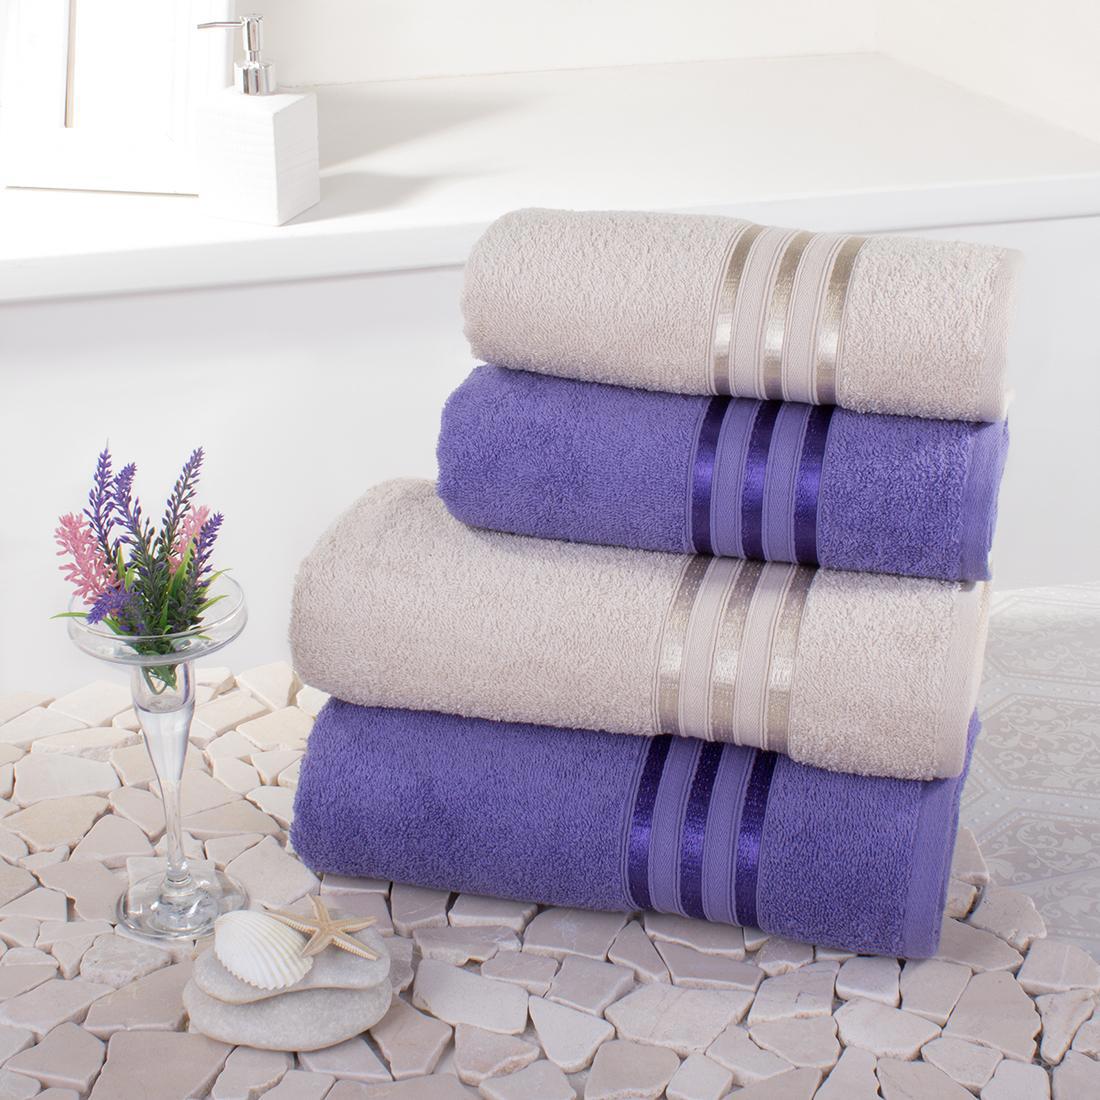 Фиолетовое полотенце. Сиреневое полотенце. Сиреневое большое полотенце. Купить сиреневые полотенца.